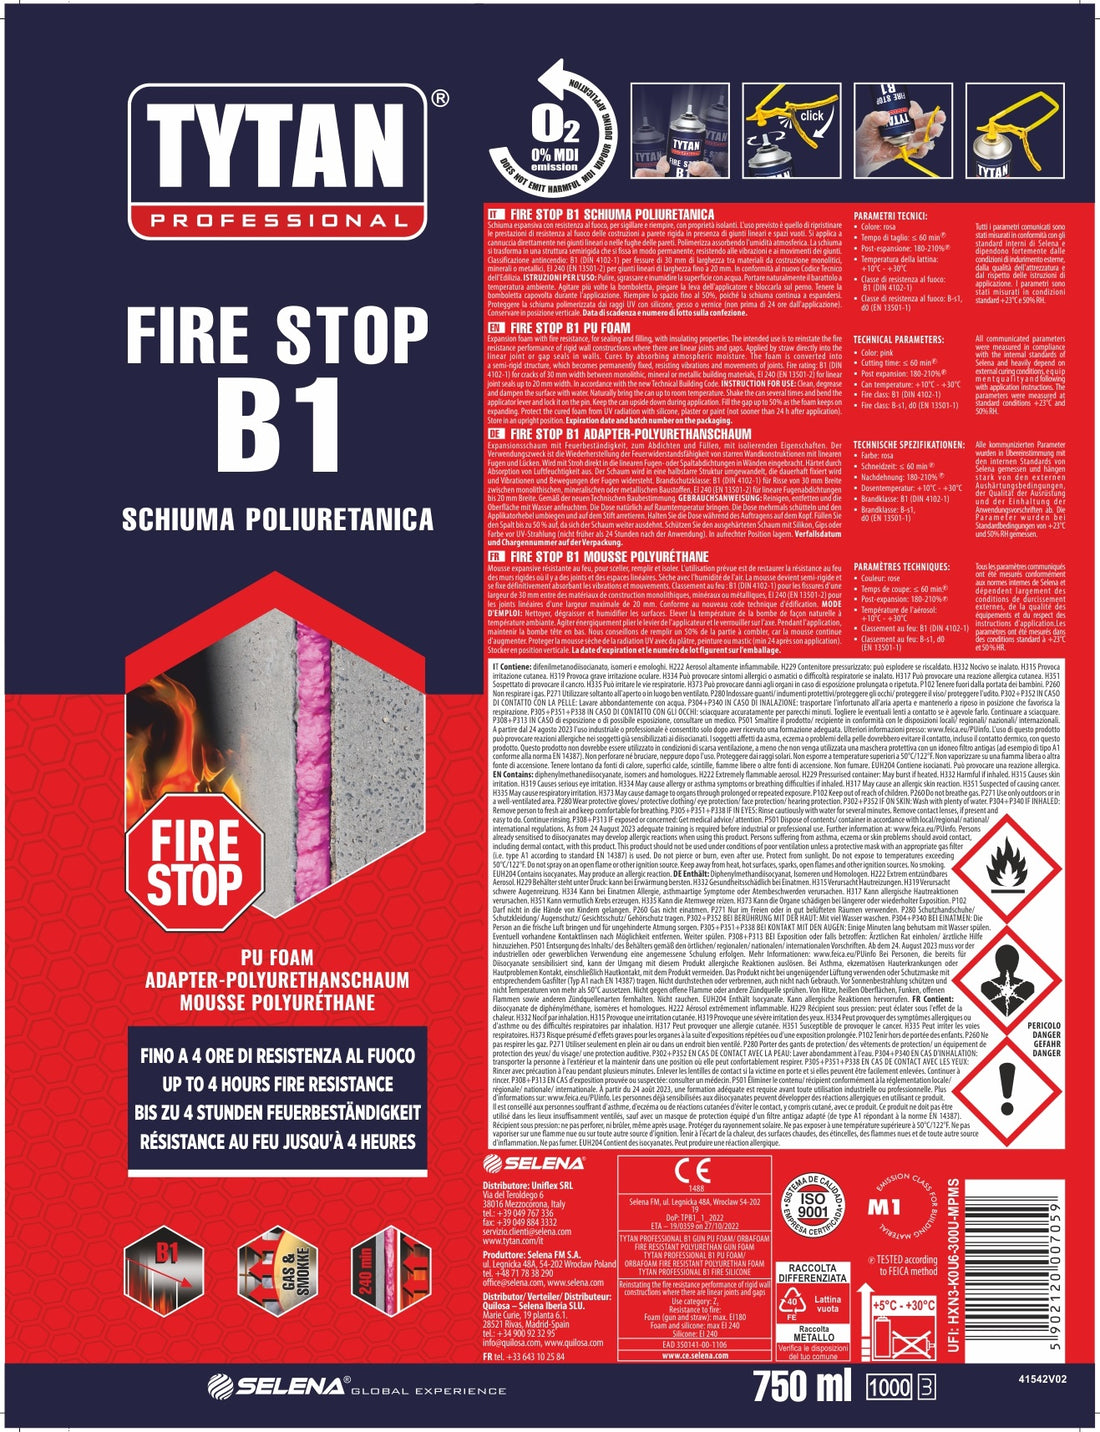 B1 FIRE-RESISTANT POLYURETHANE FOAM WITH ERGO FIRE STOP STRAW TYTAN 750ML